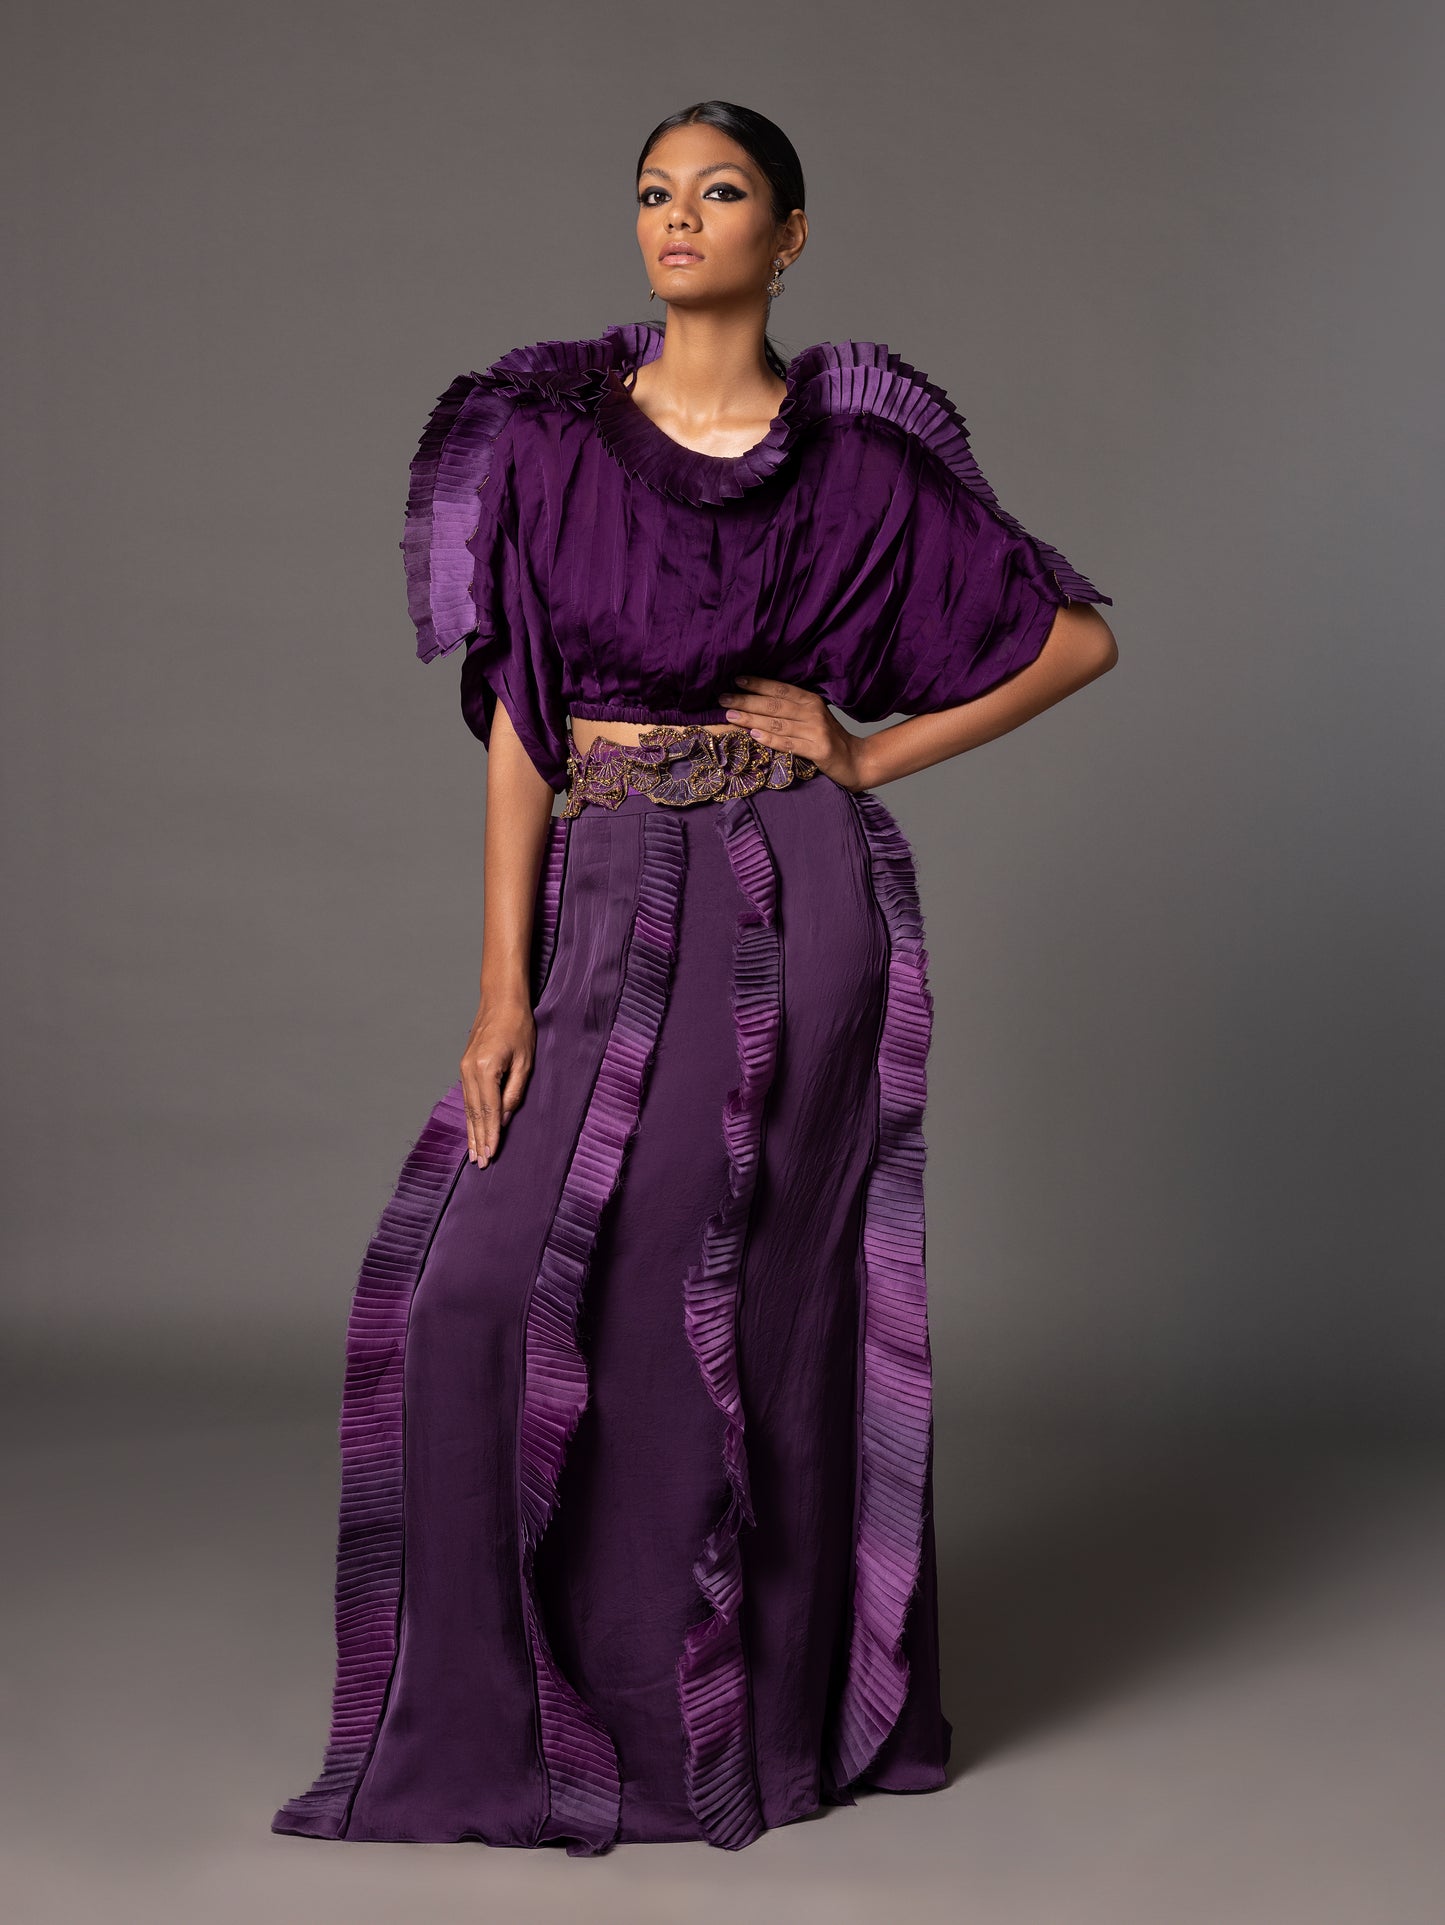 Purple Mushroom Top And Fin Skirt With Mushroom Belt